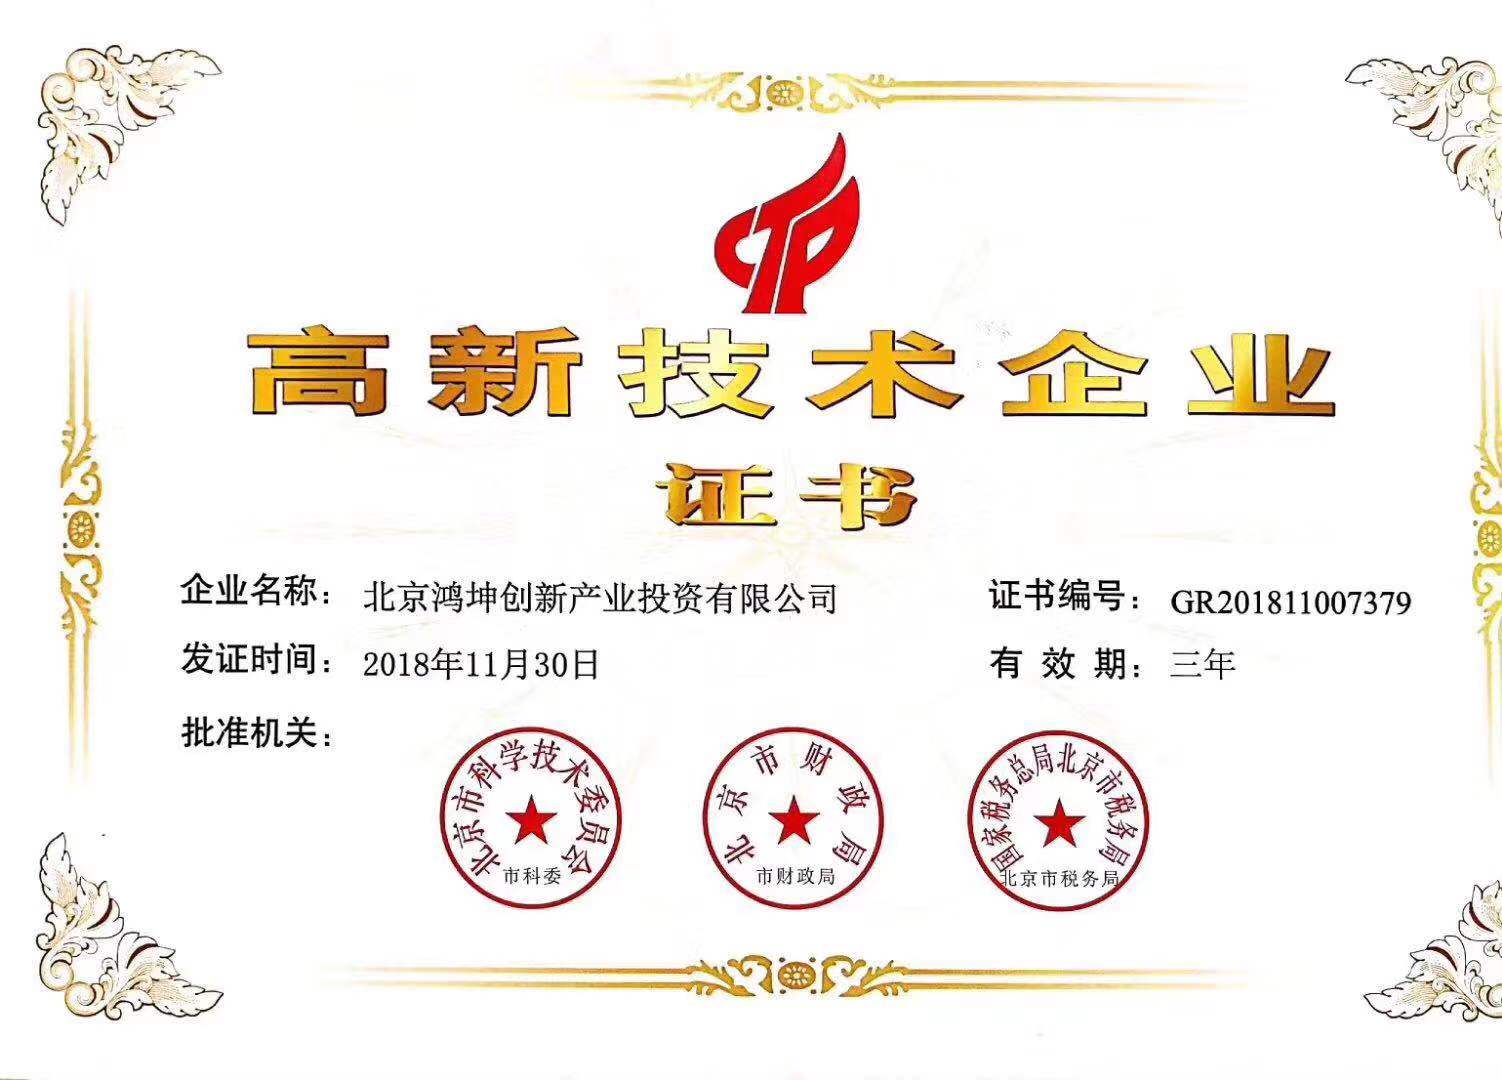 鸿坤产业获得高新技术企业认定证书